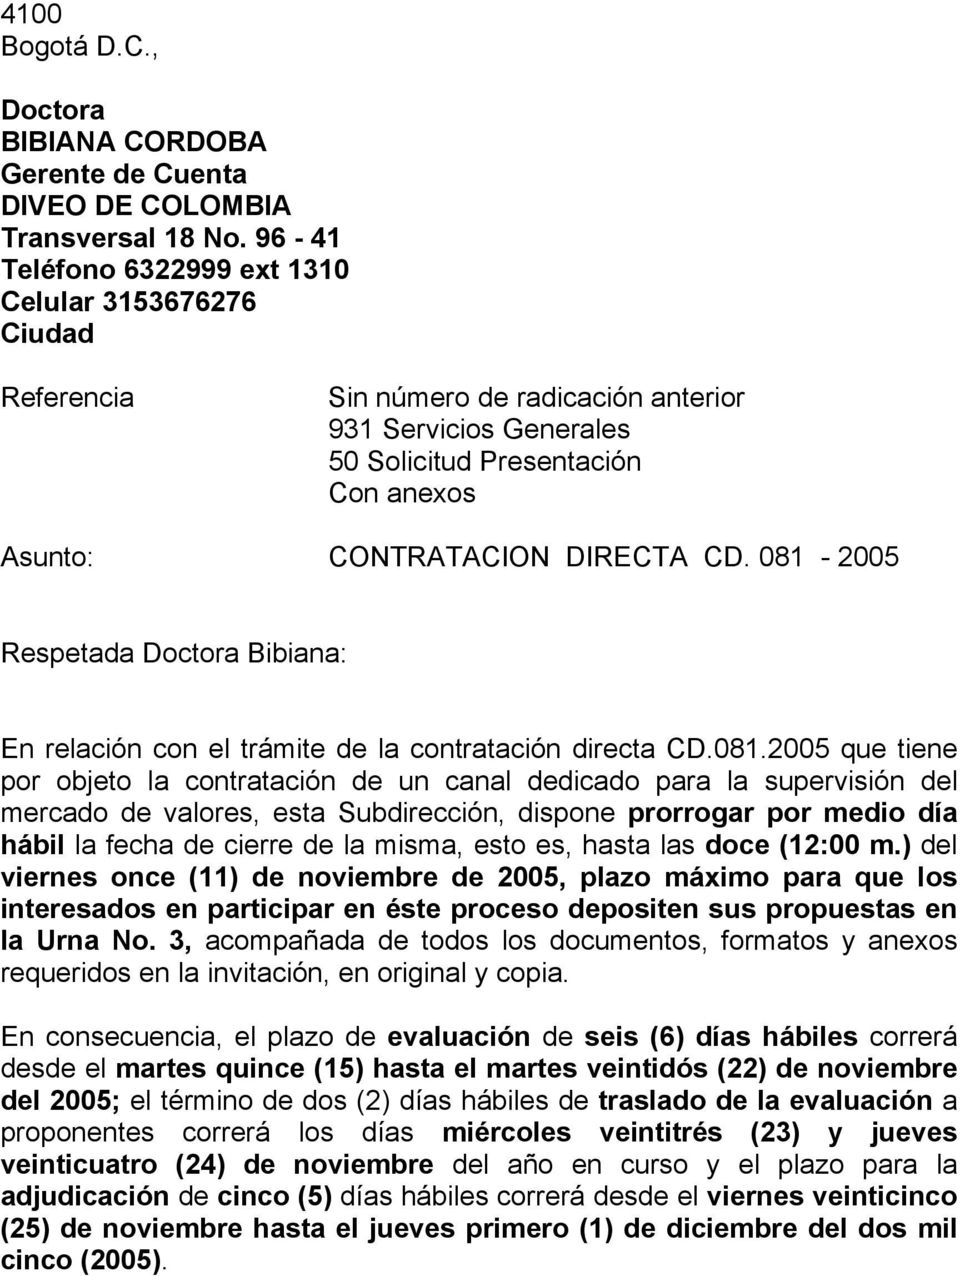 081-2005 Respetada Doctora Bibiana: En relación con el trámite de la contratación directa CD.081.2005 que tiene por objeto la contratación de un canal dedicado para la supervisión del mercado de